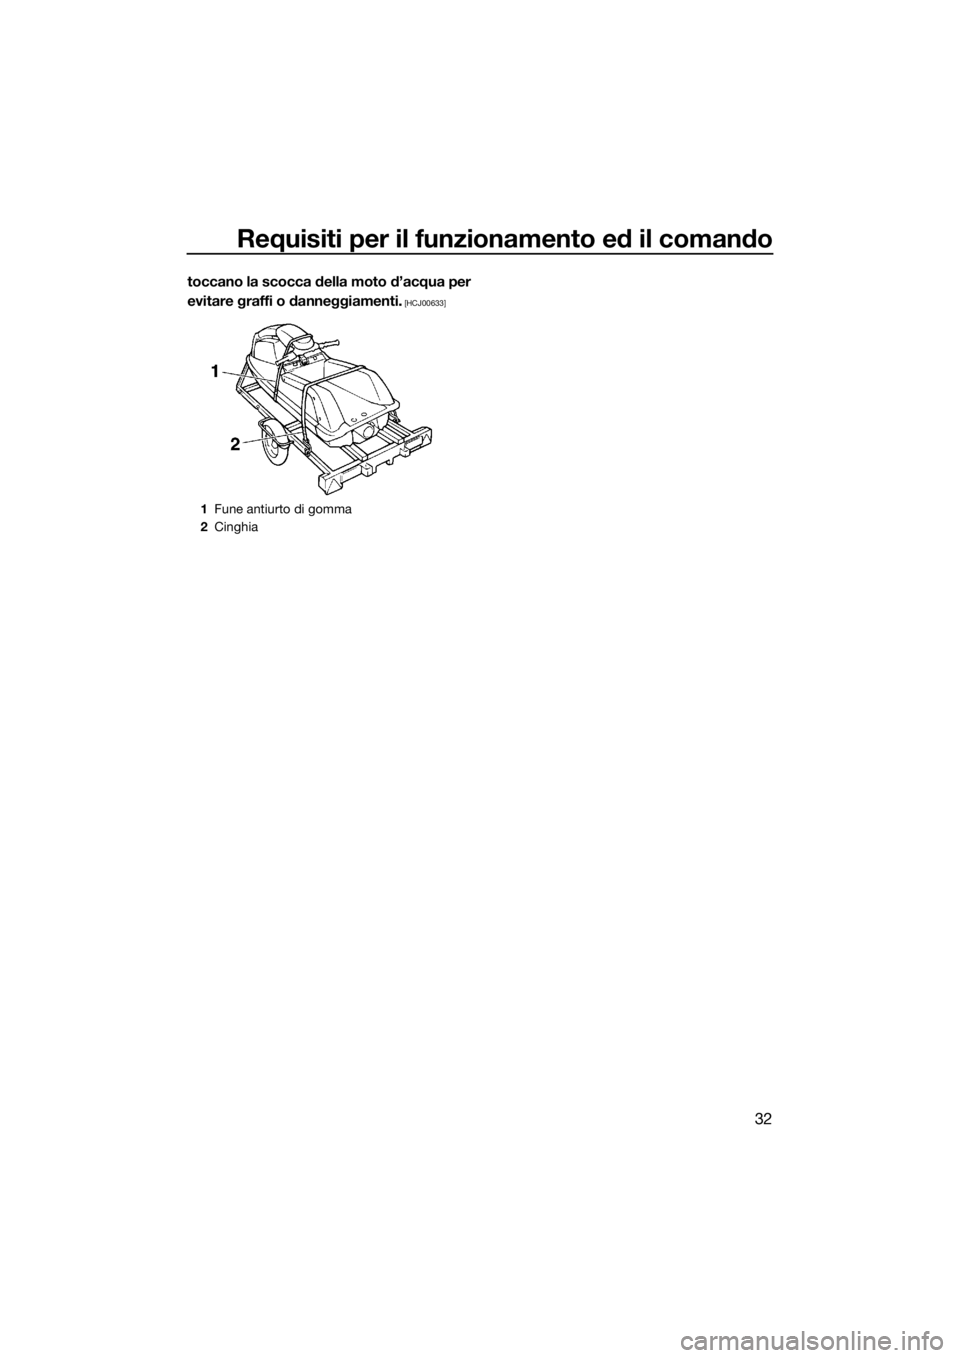 YAMAHA SUPERJET 2016  Manuale duso (in Italian) Requisiti per il funzionamento ed il comando
32
toccano la scocca della moto d’acqua per
evitare graffi o danneggiamenti.
 [HCJ00633]
1Fune antiurto di gomma
2Cinghia
UF4D71H0.book  Page 32  Tuesday